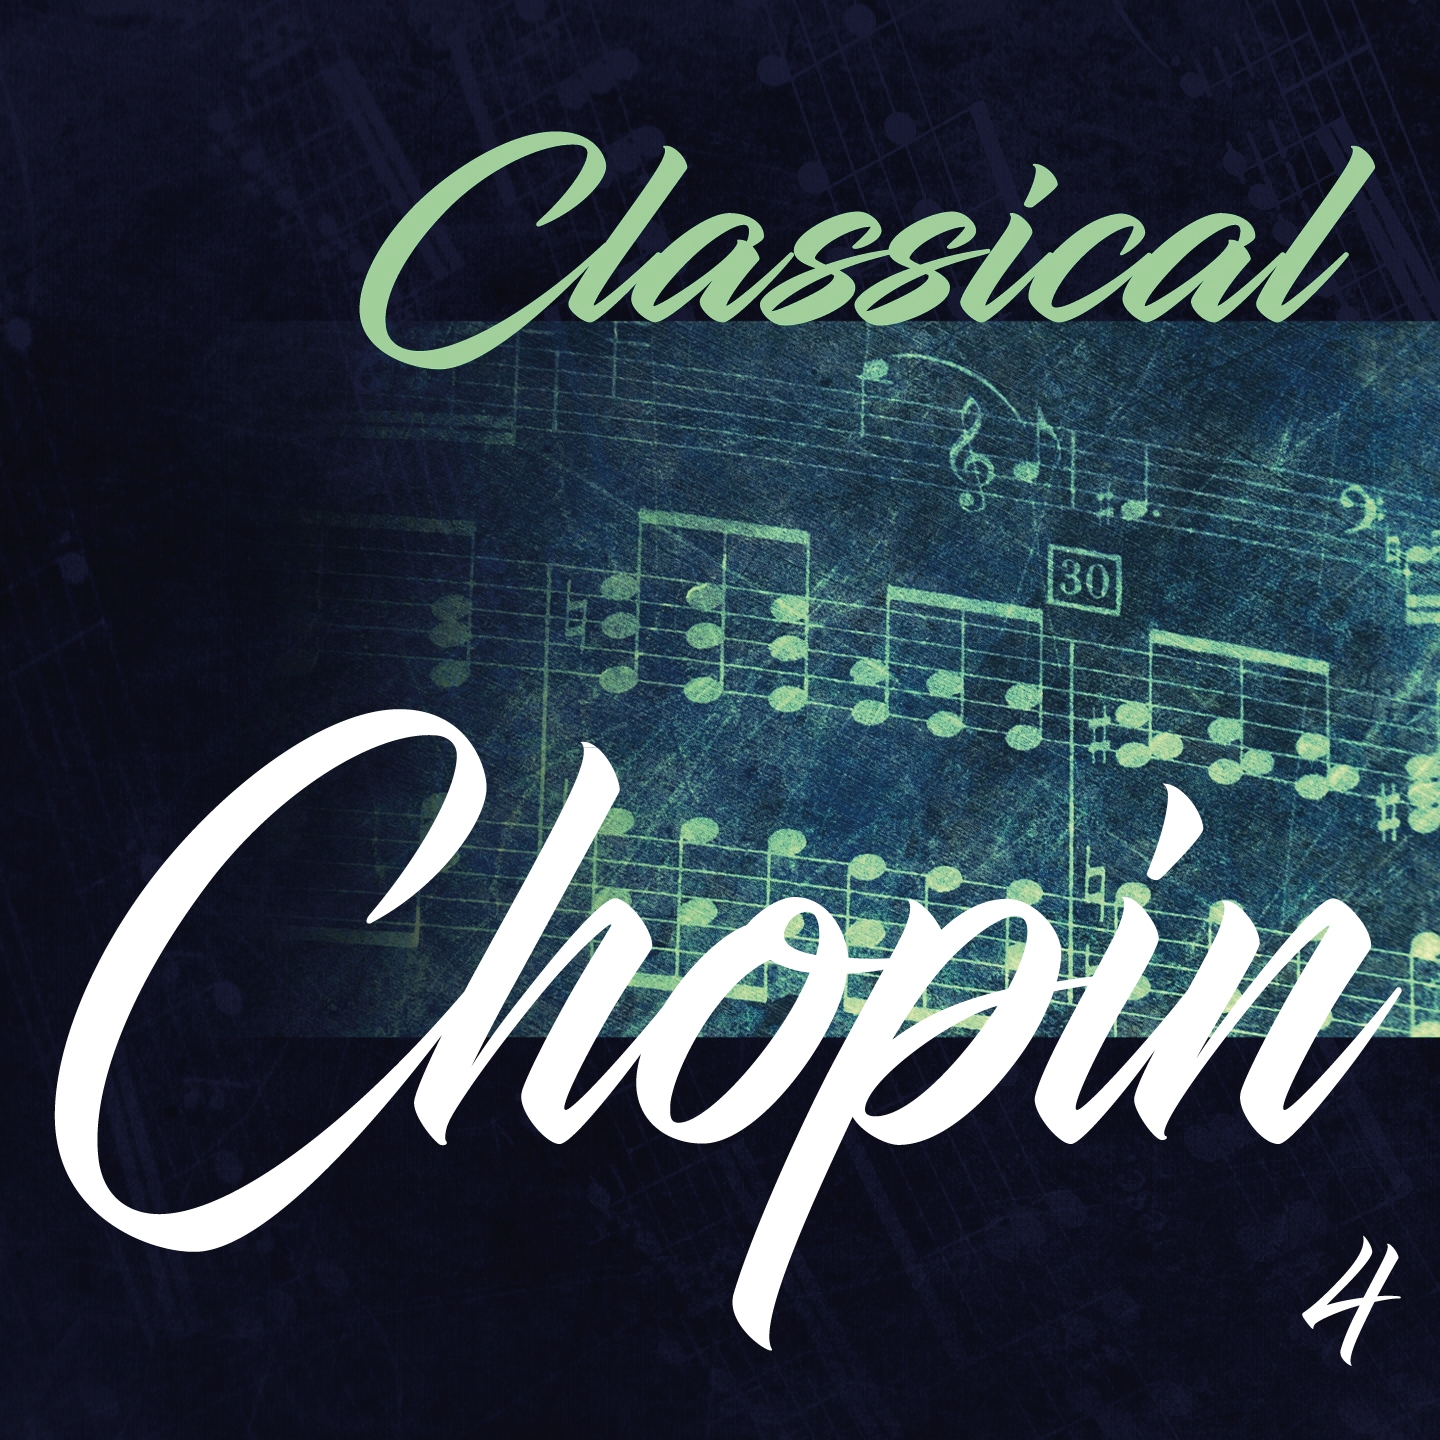 Classical Chopin 4